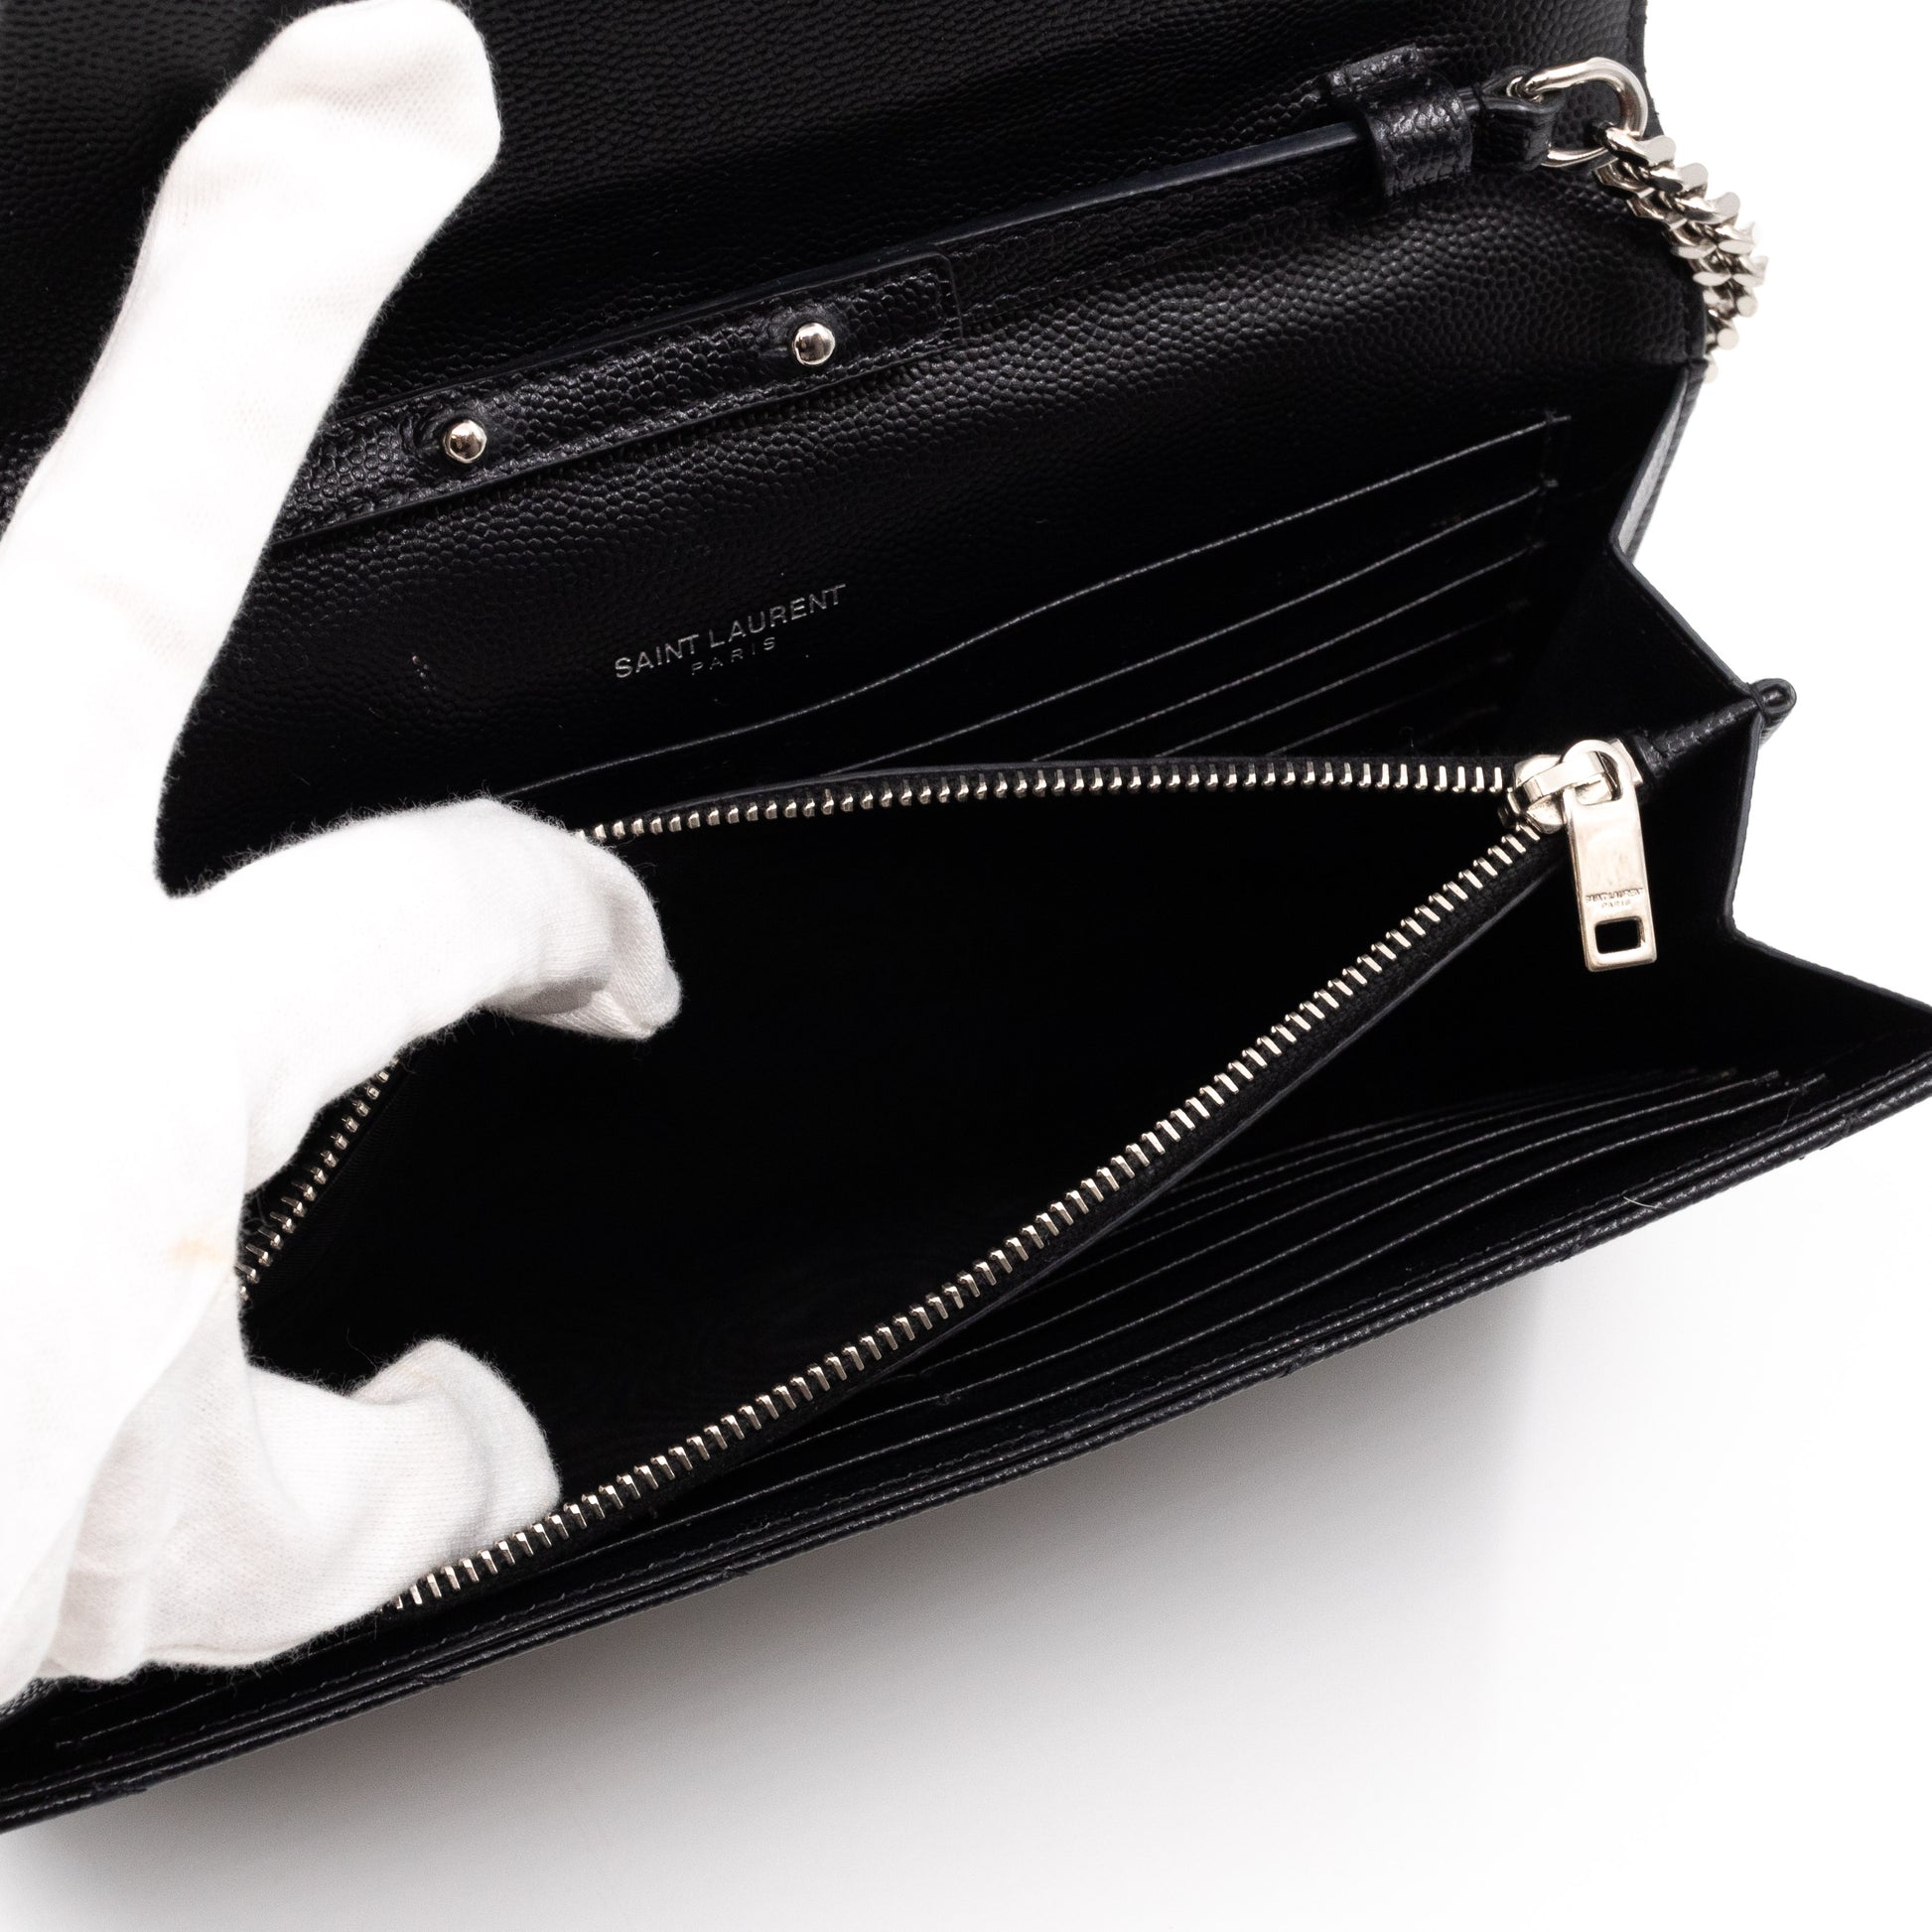 Cassandre Matelasse Envelope Leather Wallet On Chain in White